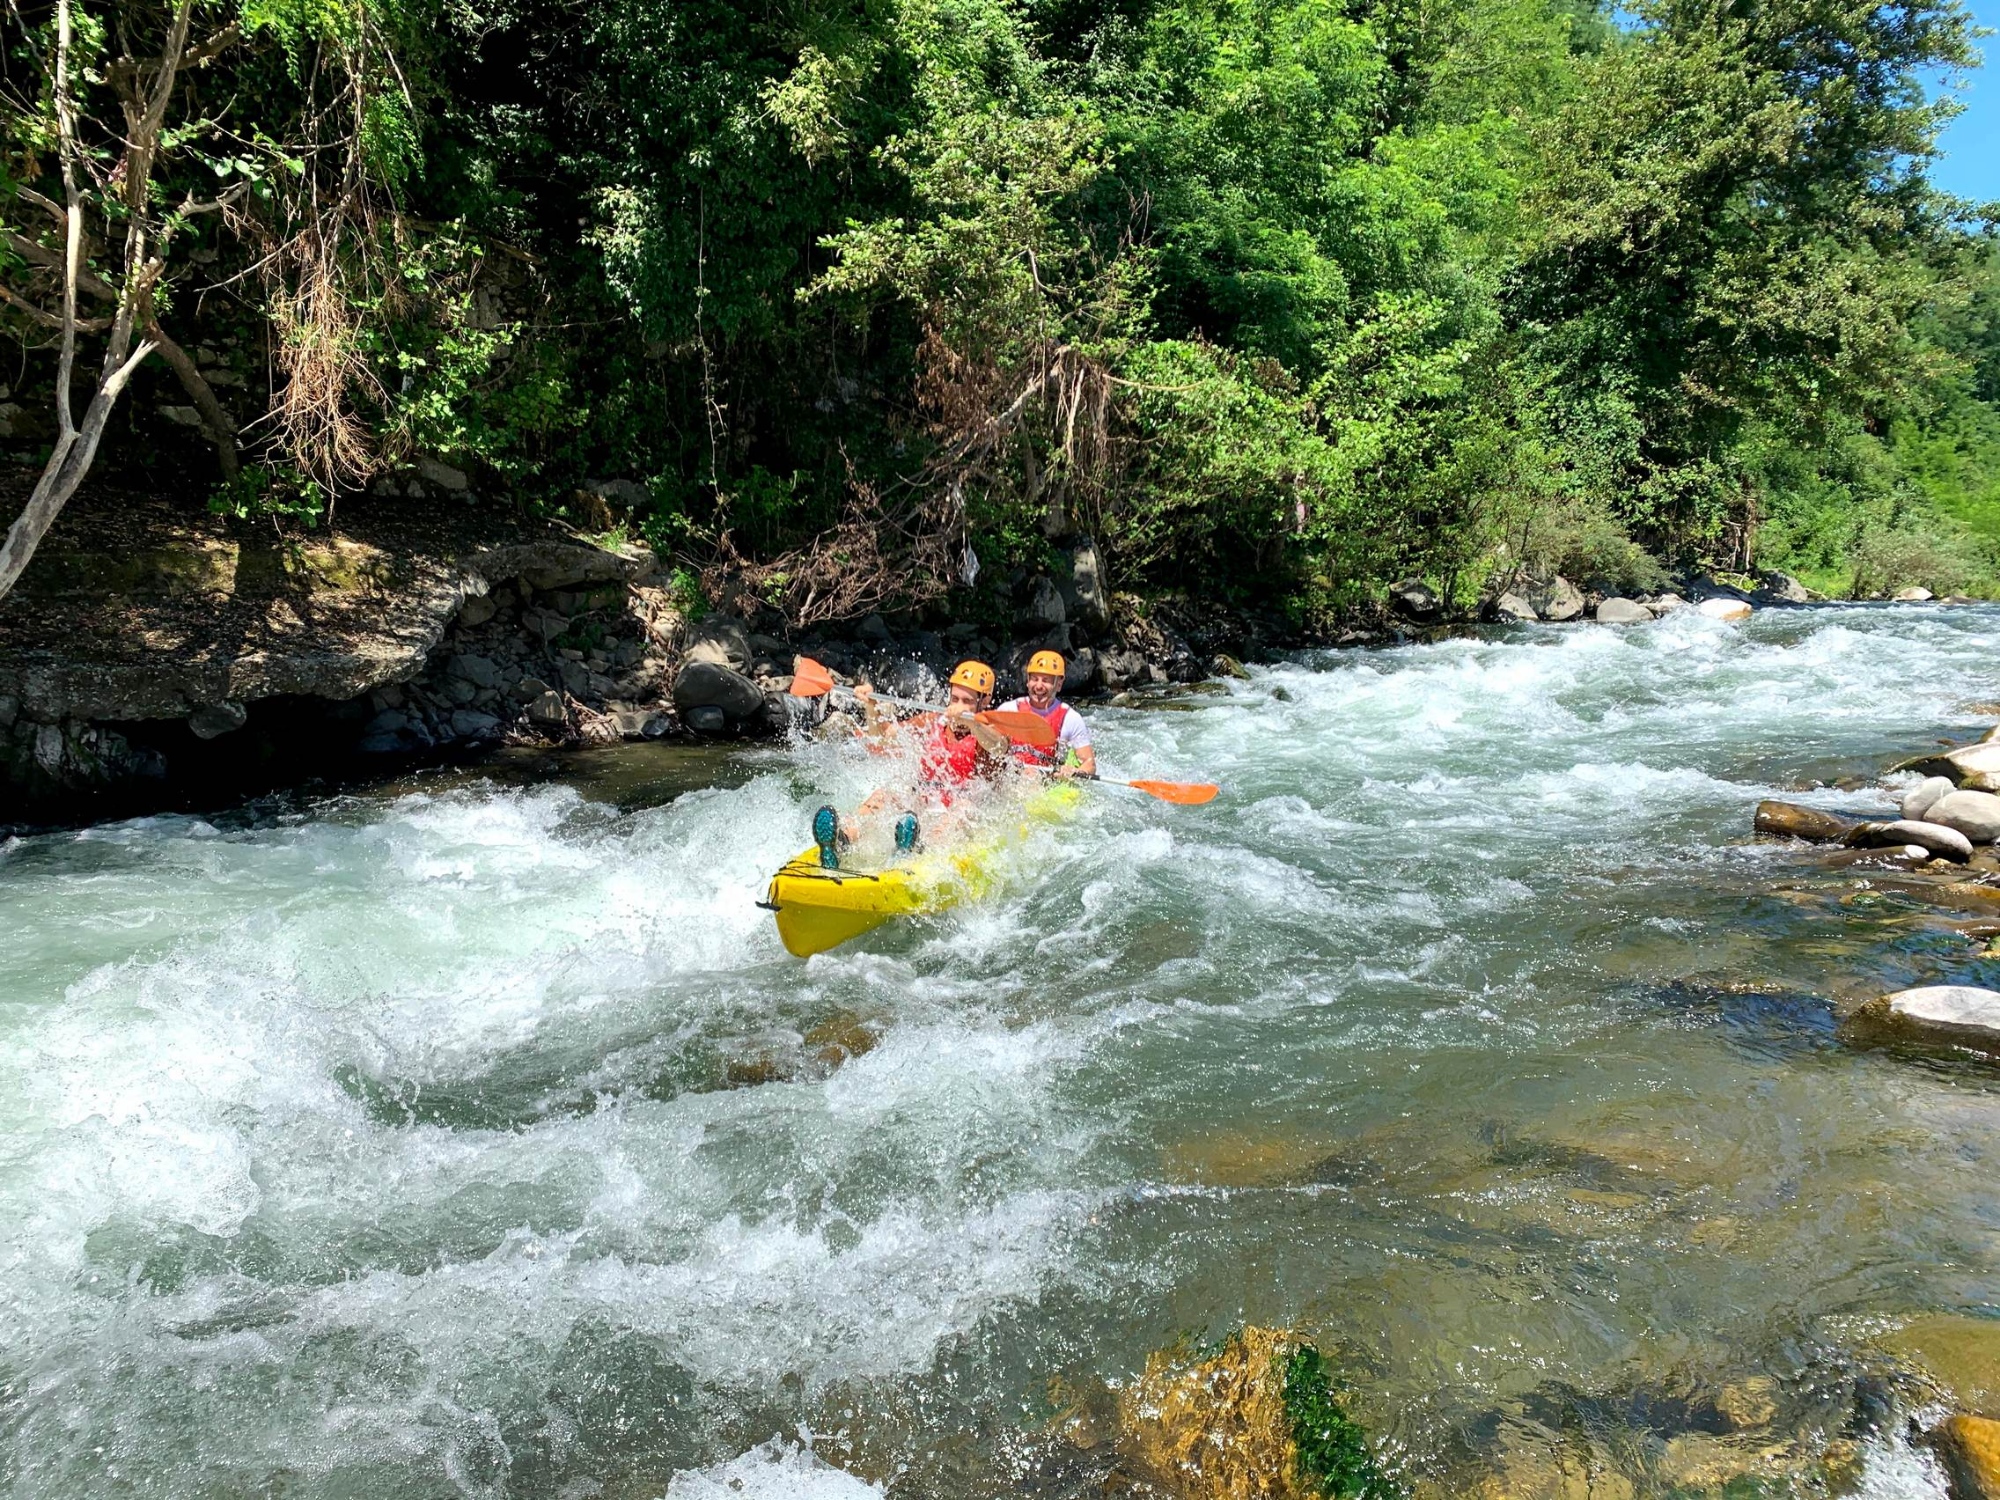 Vivi un'esperienza divertente in kayak nei fiumi e torrenti della Garfagnana